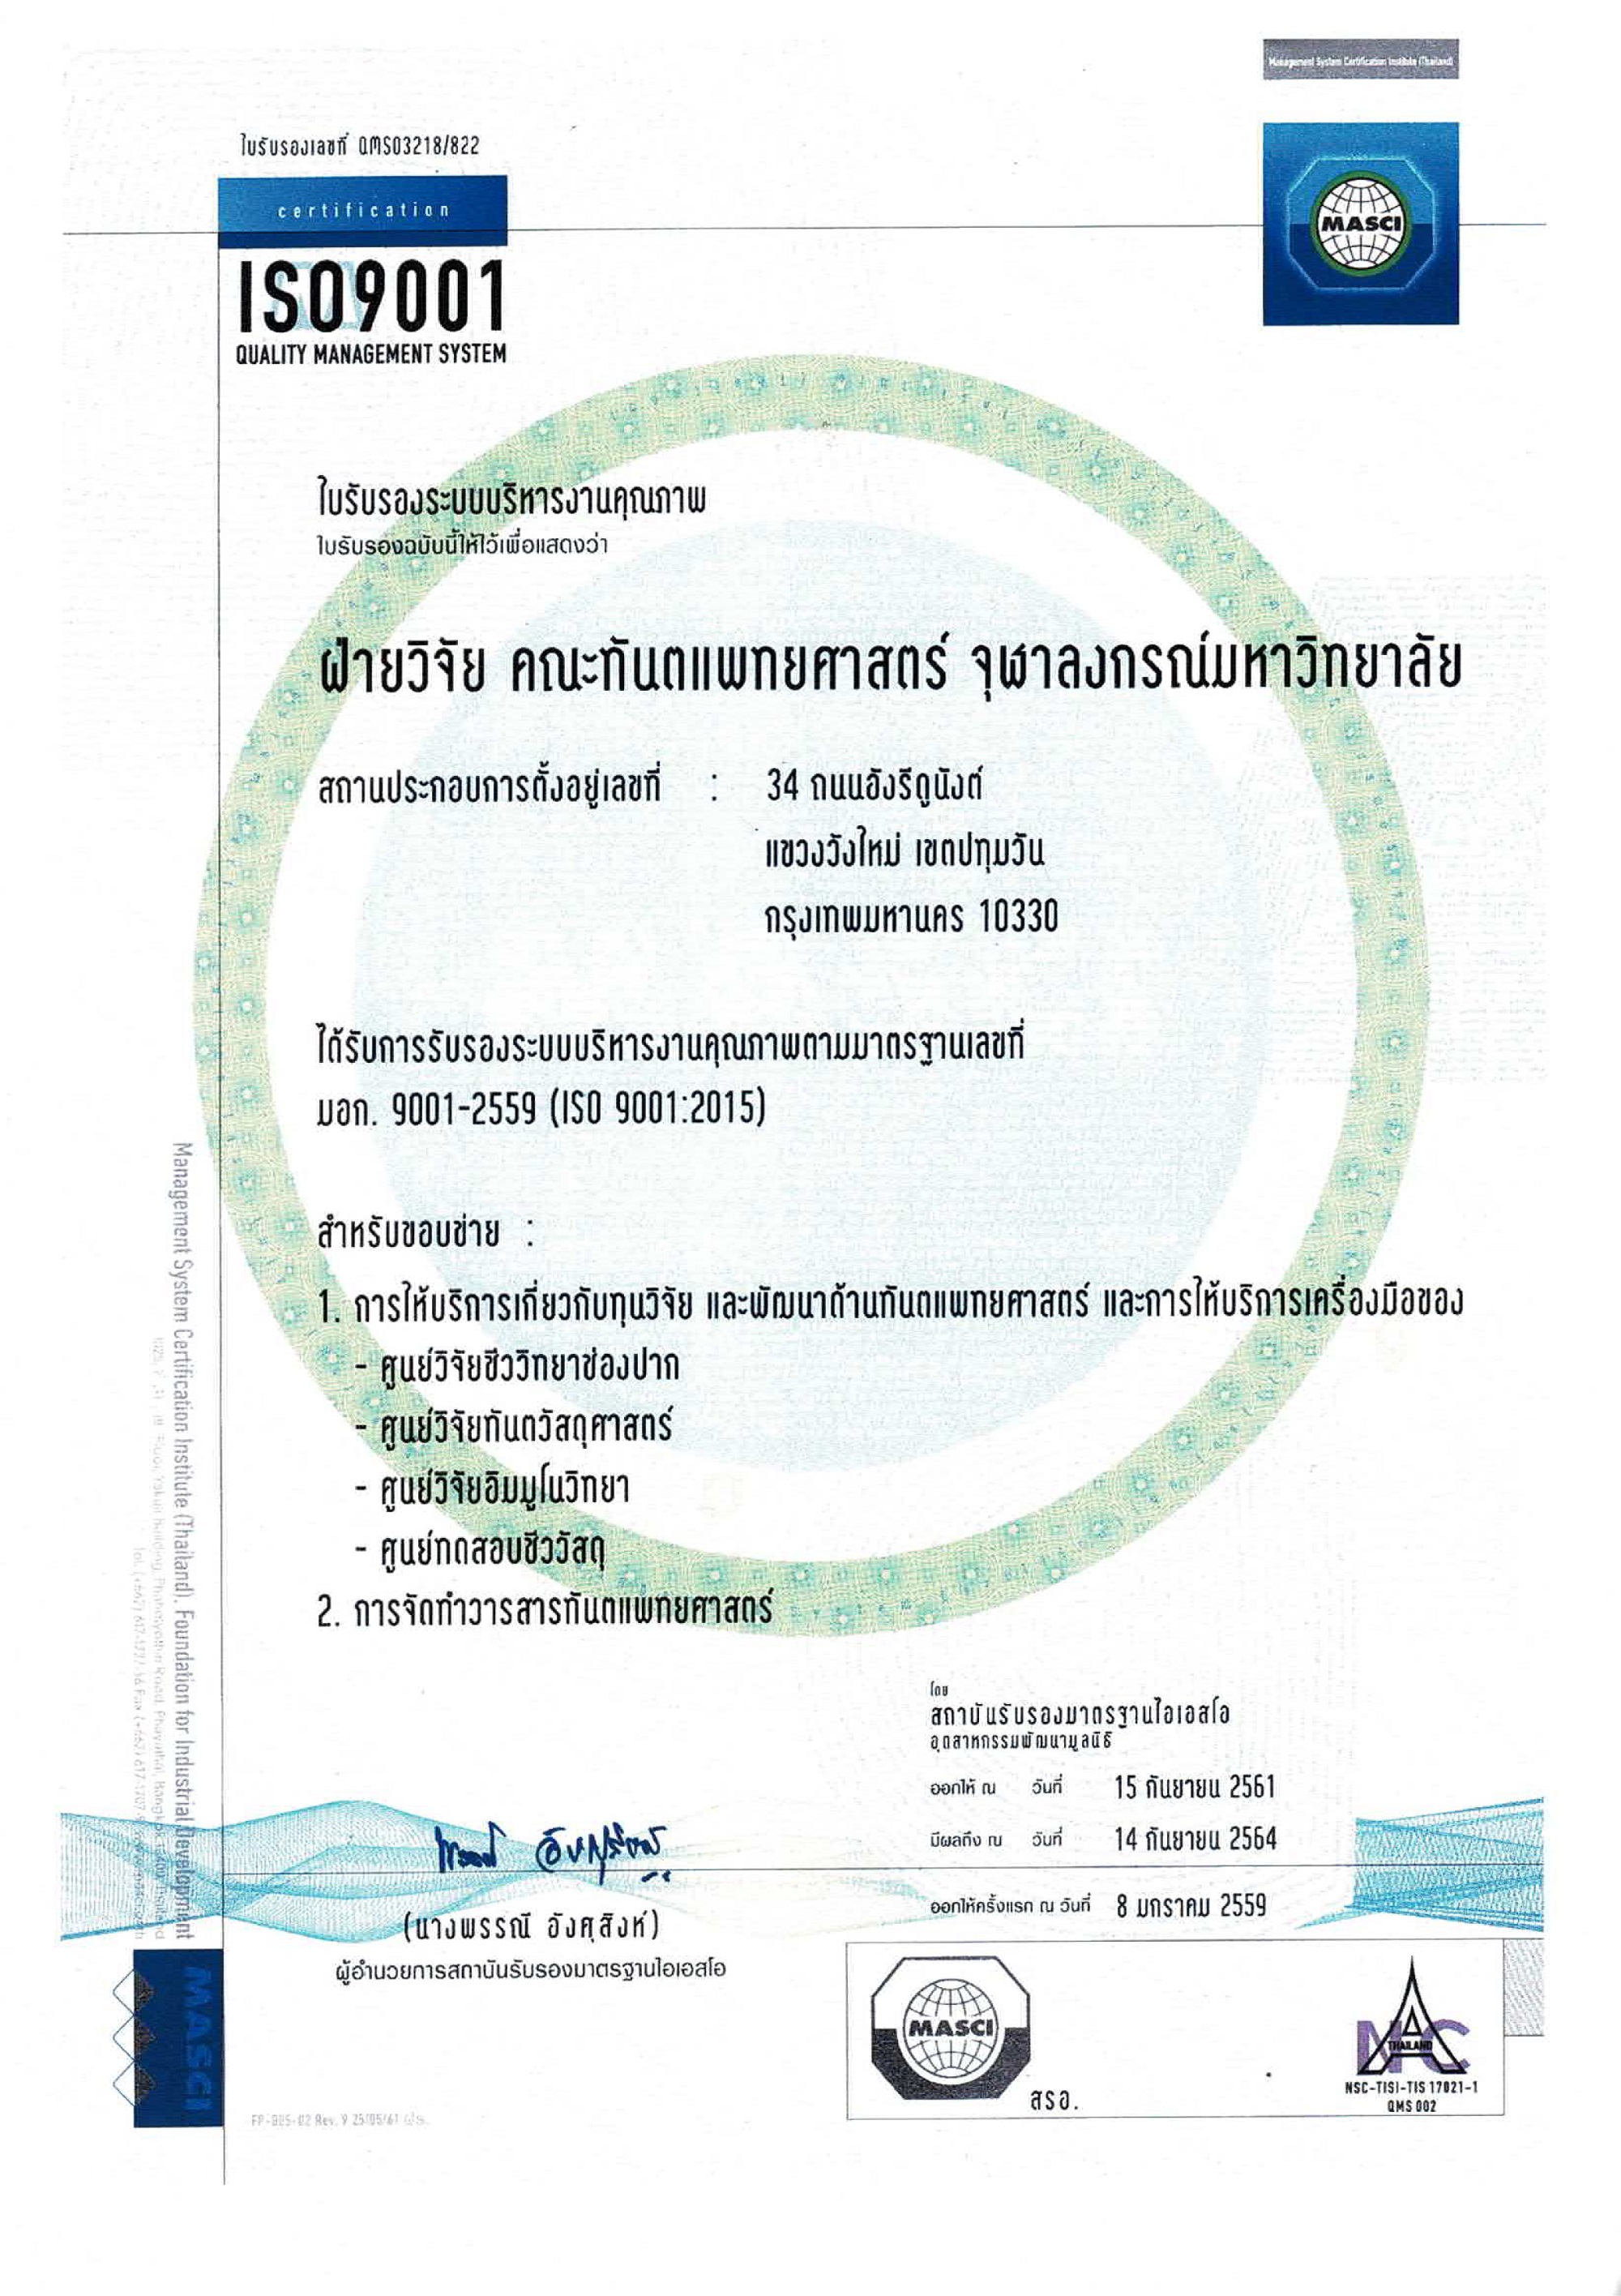 ISO%20(Thai) คณะทันตแพทยศาสตร์ จุฬาลงกรณ์มหาวิทยาลัย